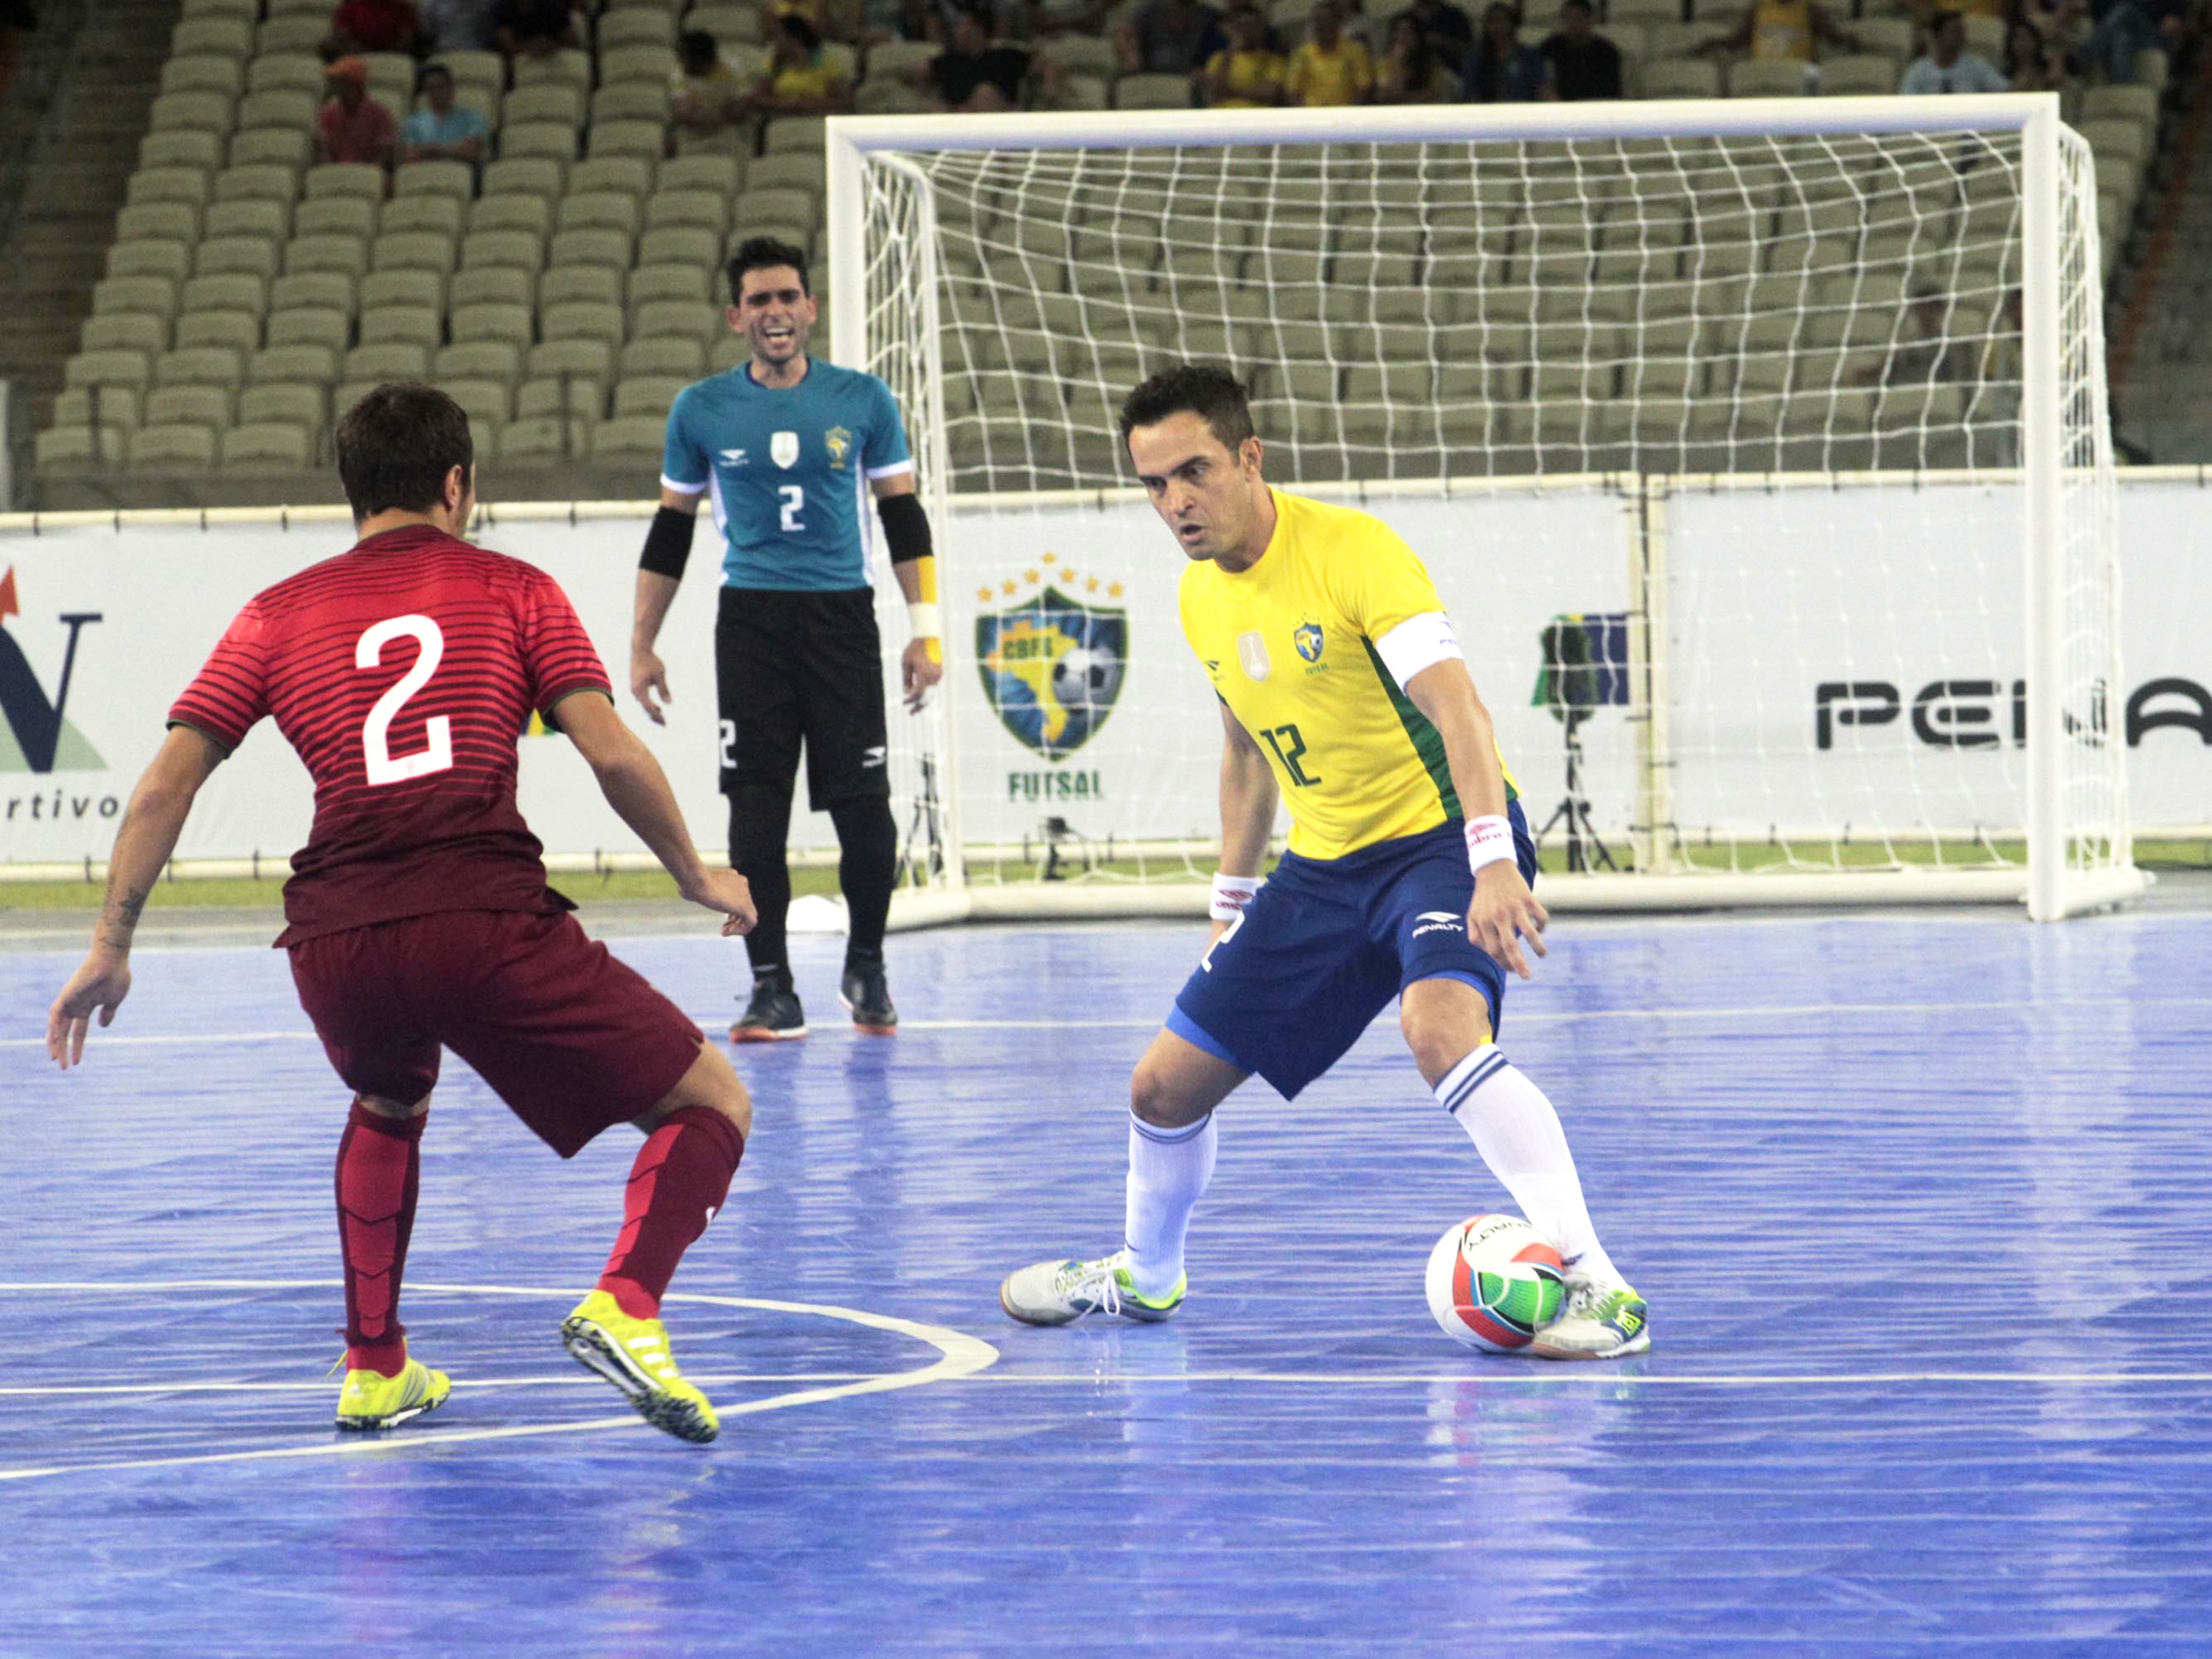 O jogador do Brasil, Falcão, durante a partida entre Brasil e Portugal válida pelo Desafio Internacional de Futsal 2015, no Estádio Arena Castelão em Fortaleza (CE)